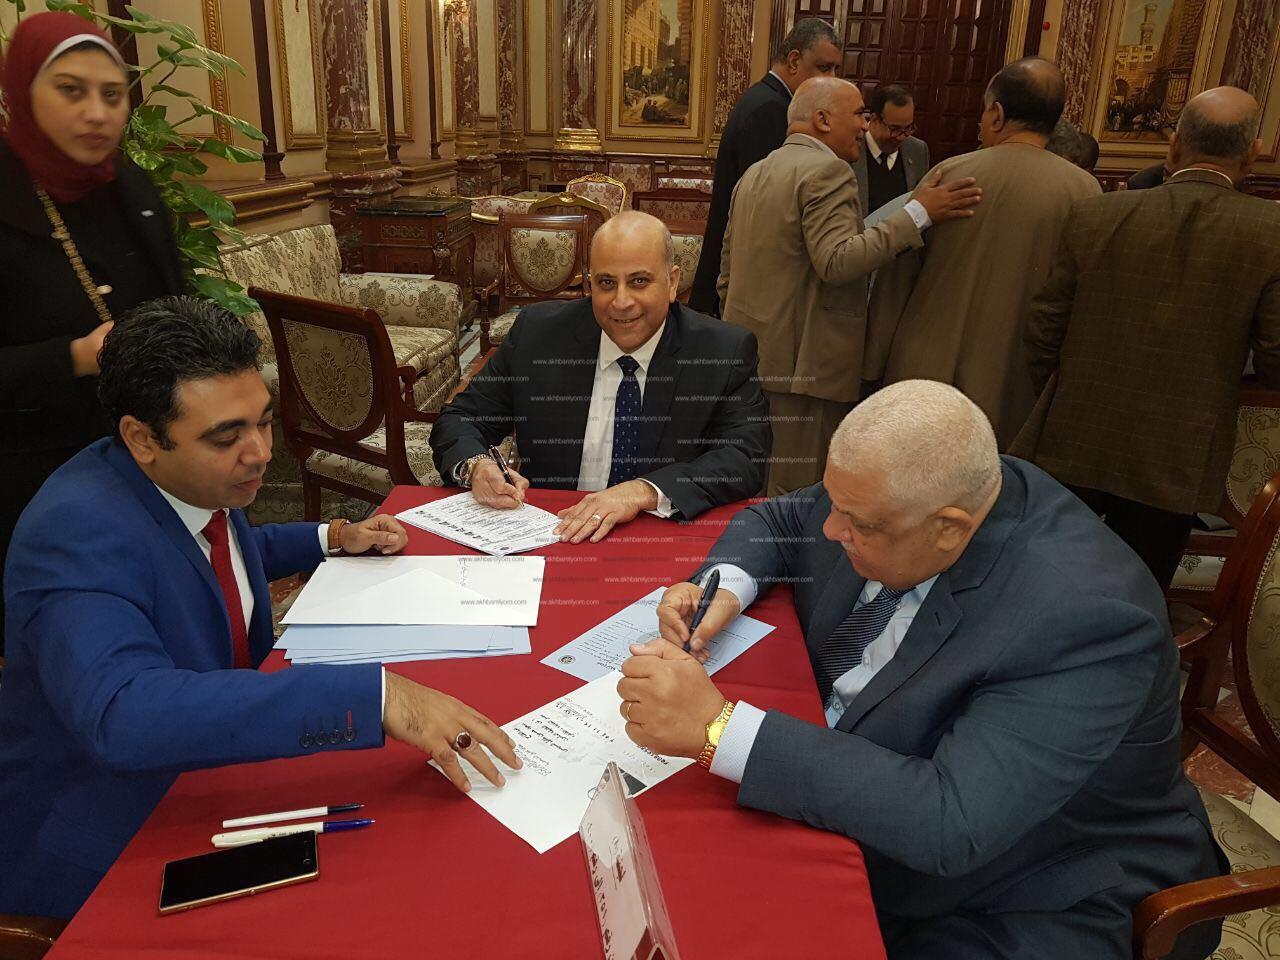  أعضاء البرلمان يبدأون توقيع توكيلات تأييد الرئيس السيسى للترشح فى الانتخابات الرئاسية